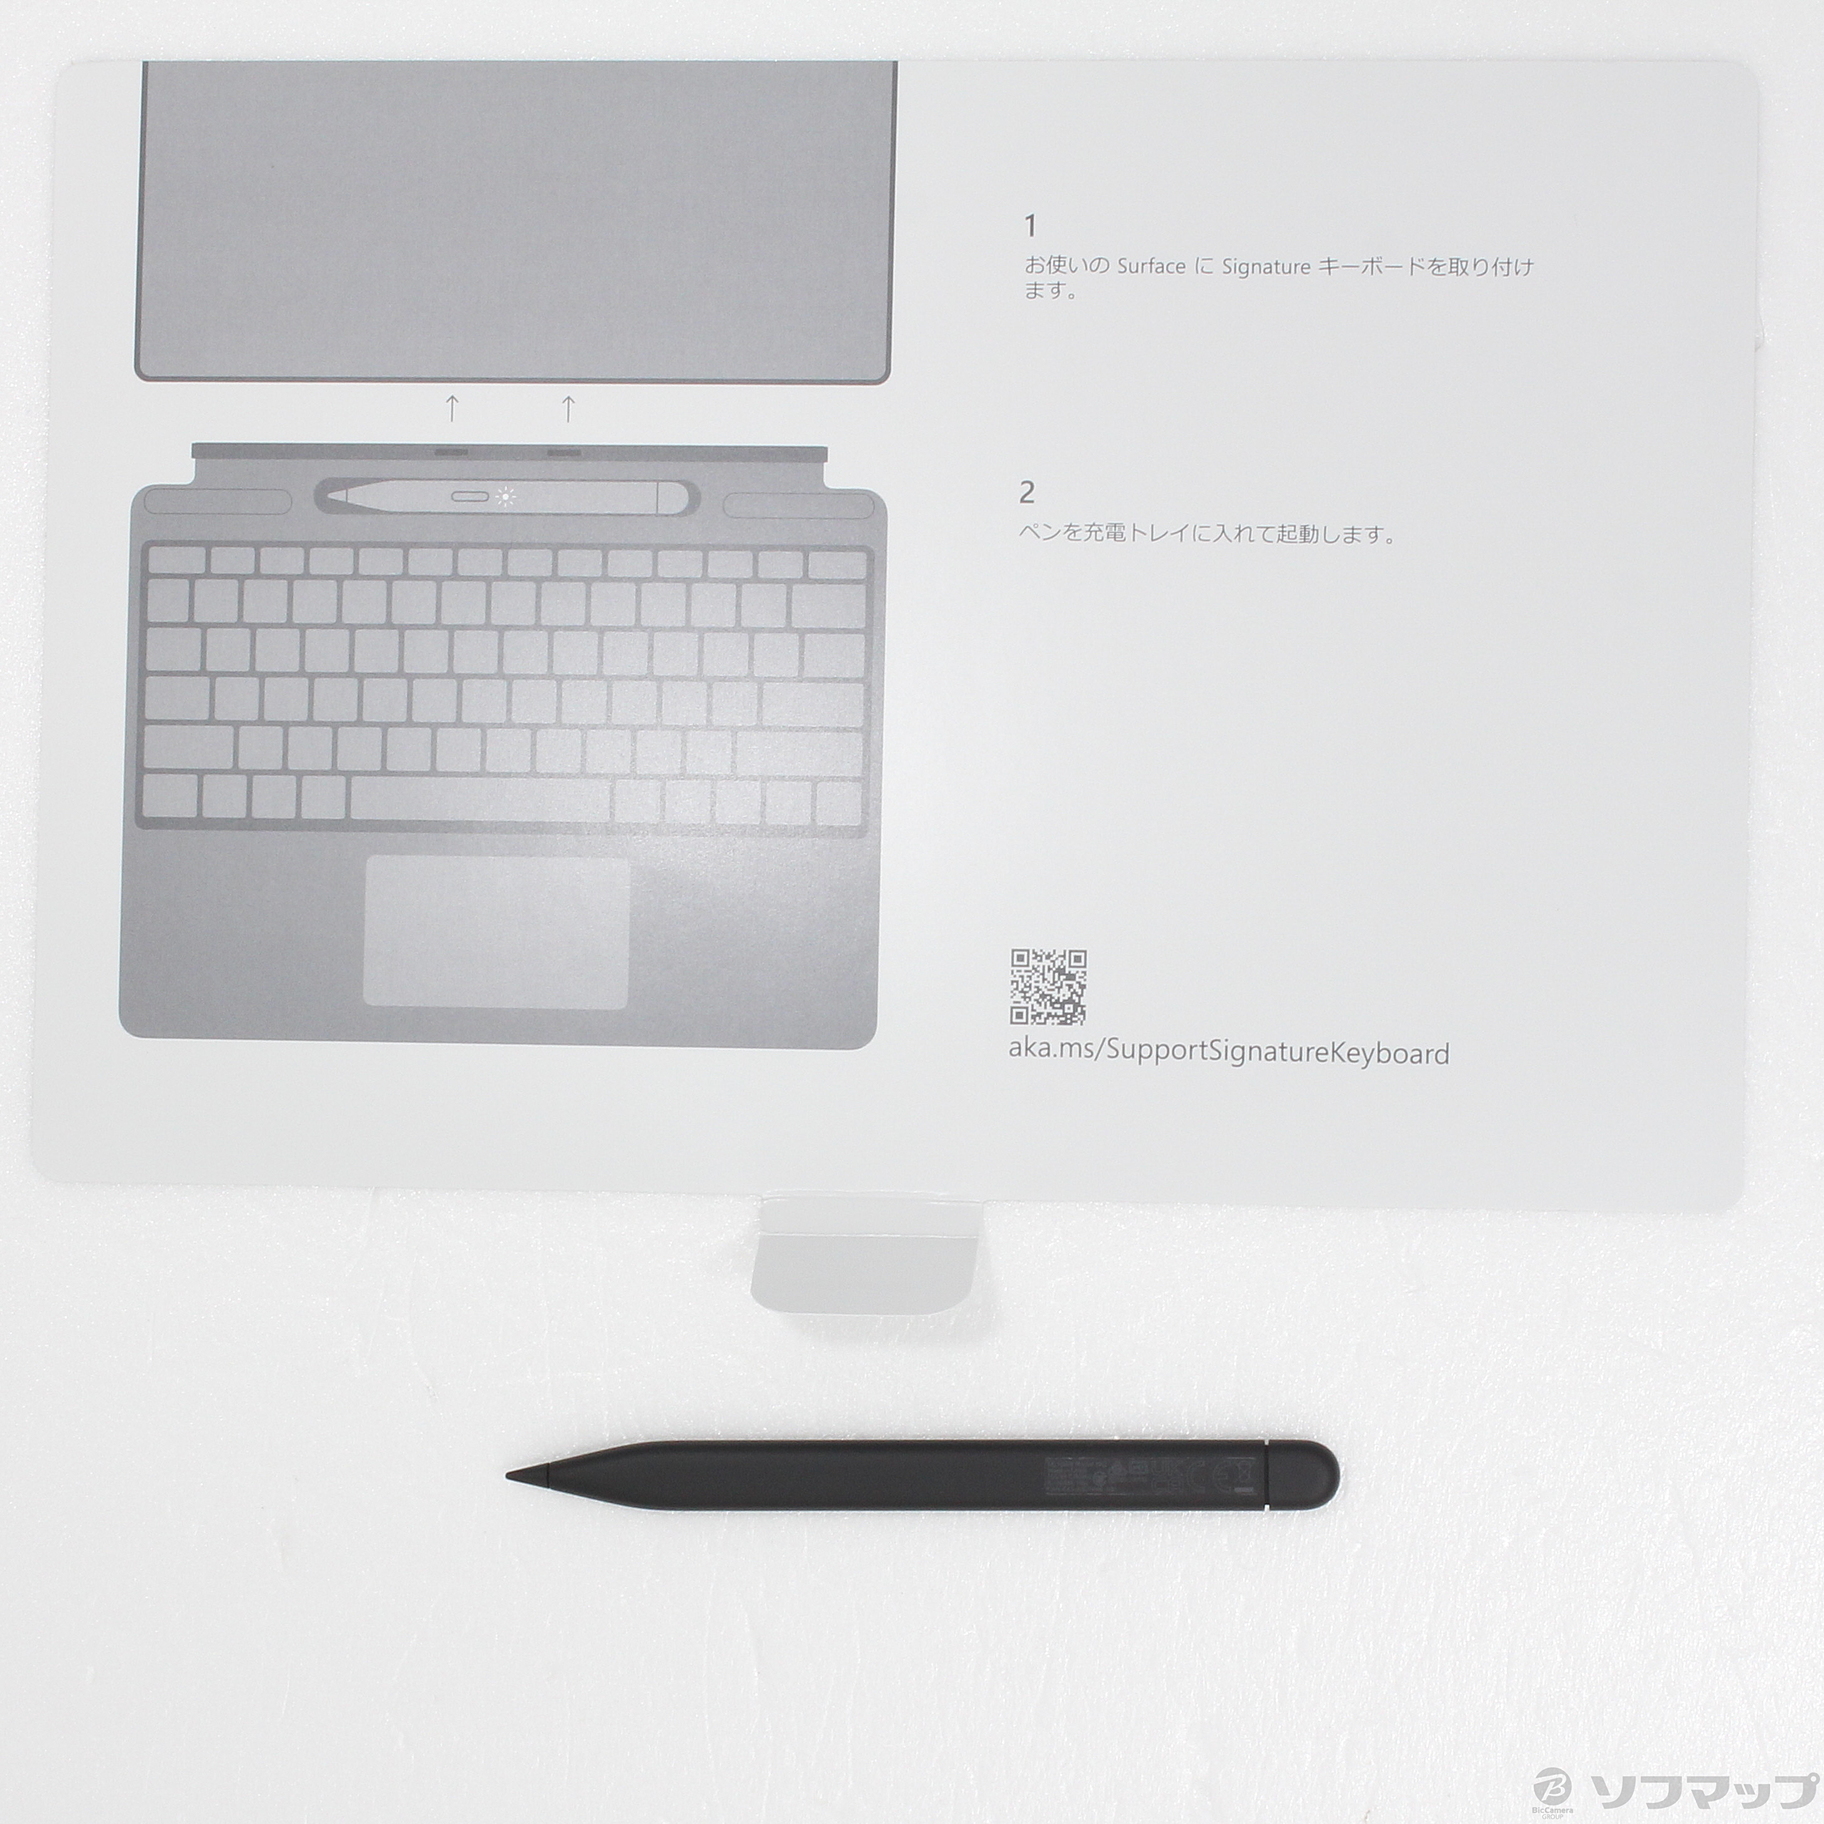 ☆スリムペン2付き Surface Pro Signature キーボード 日本語 8X6-00115 [サファイア]